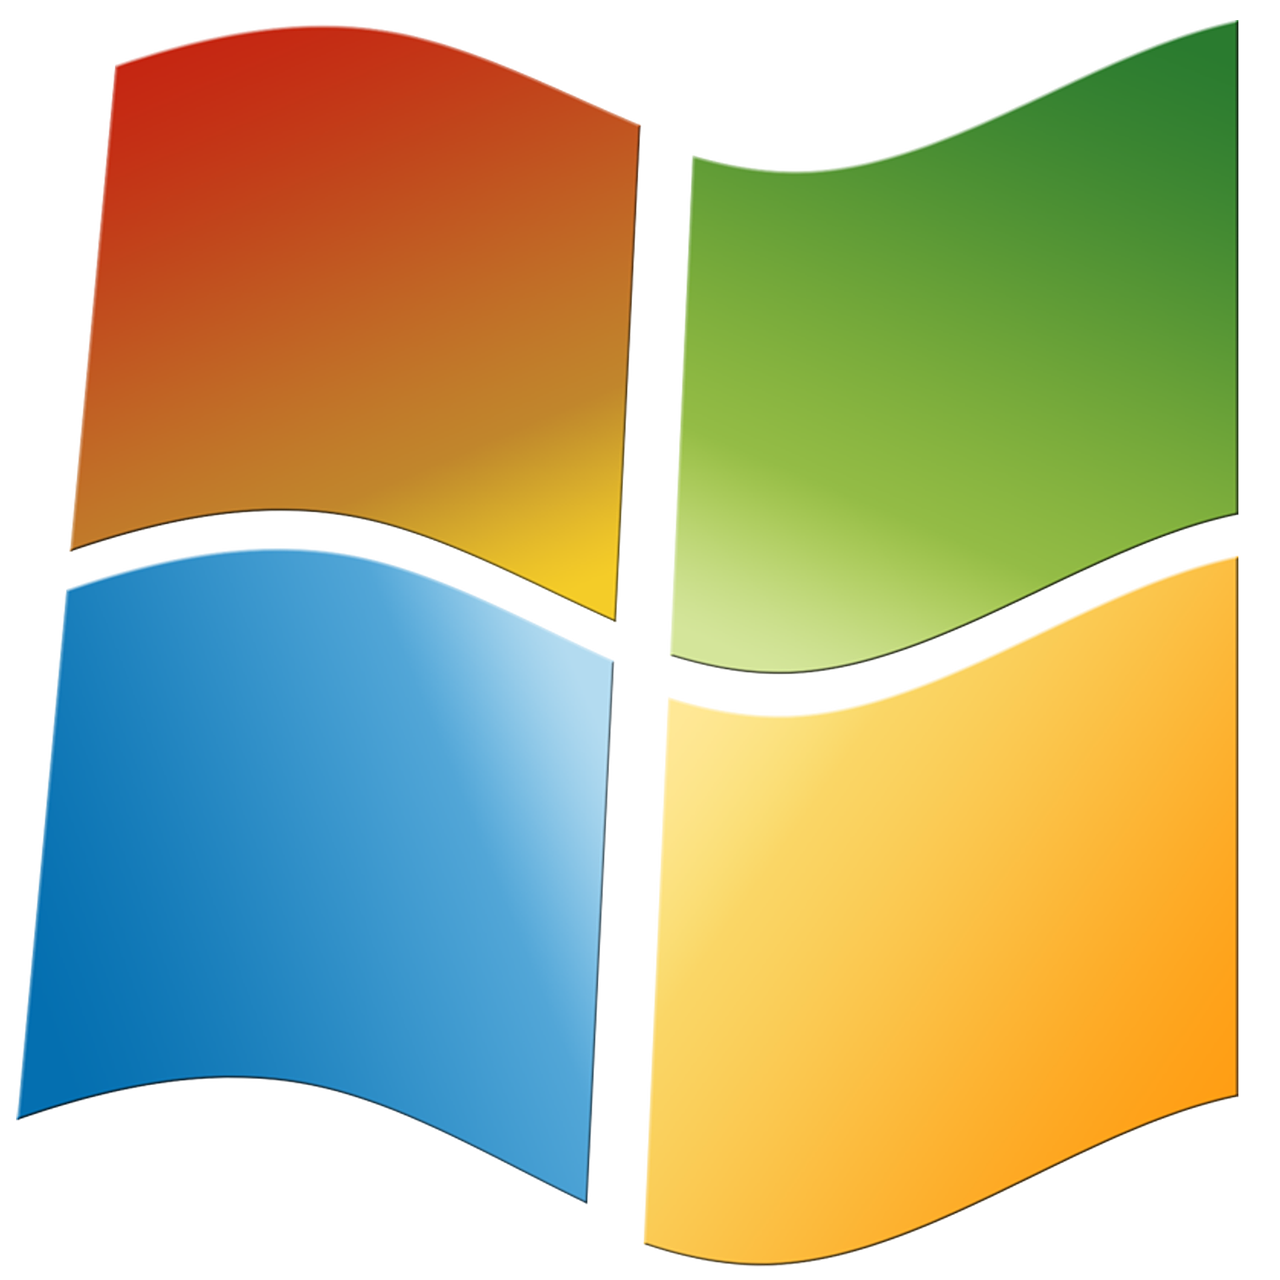 Support für Windows 7 endet